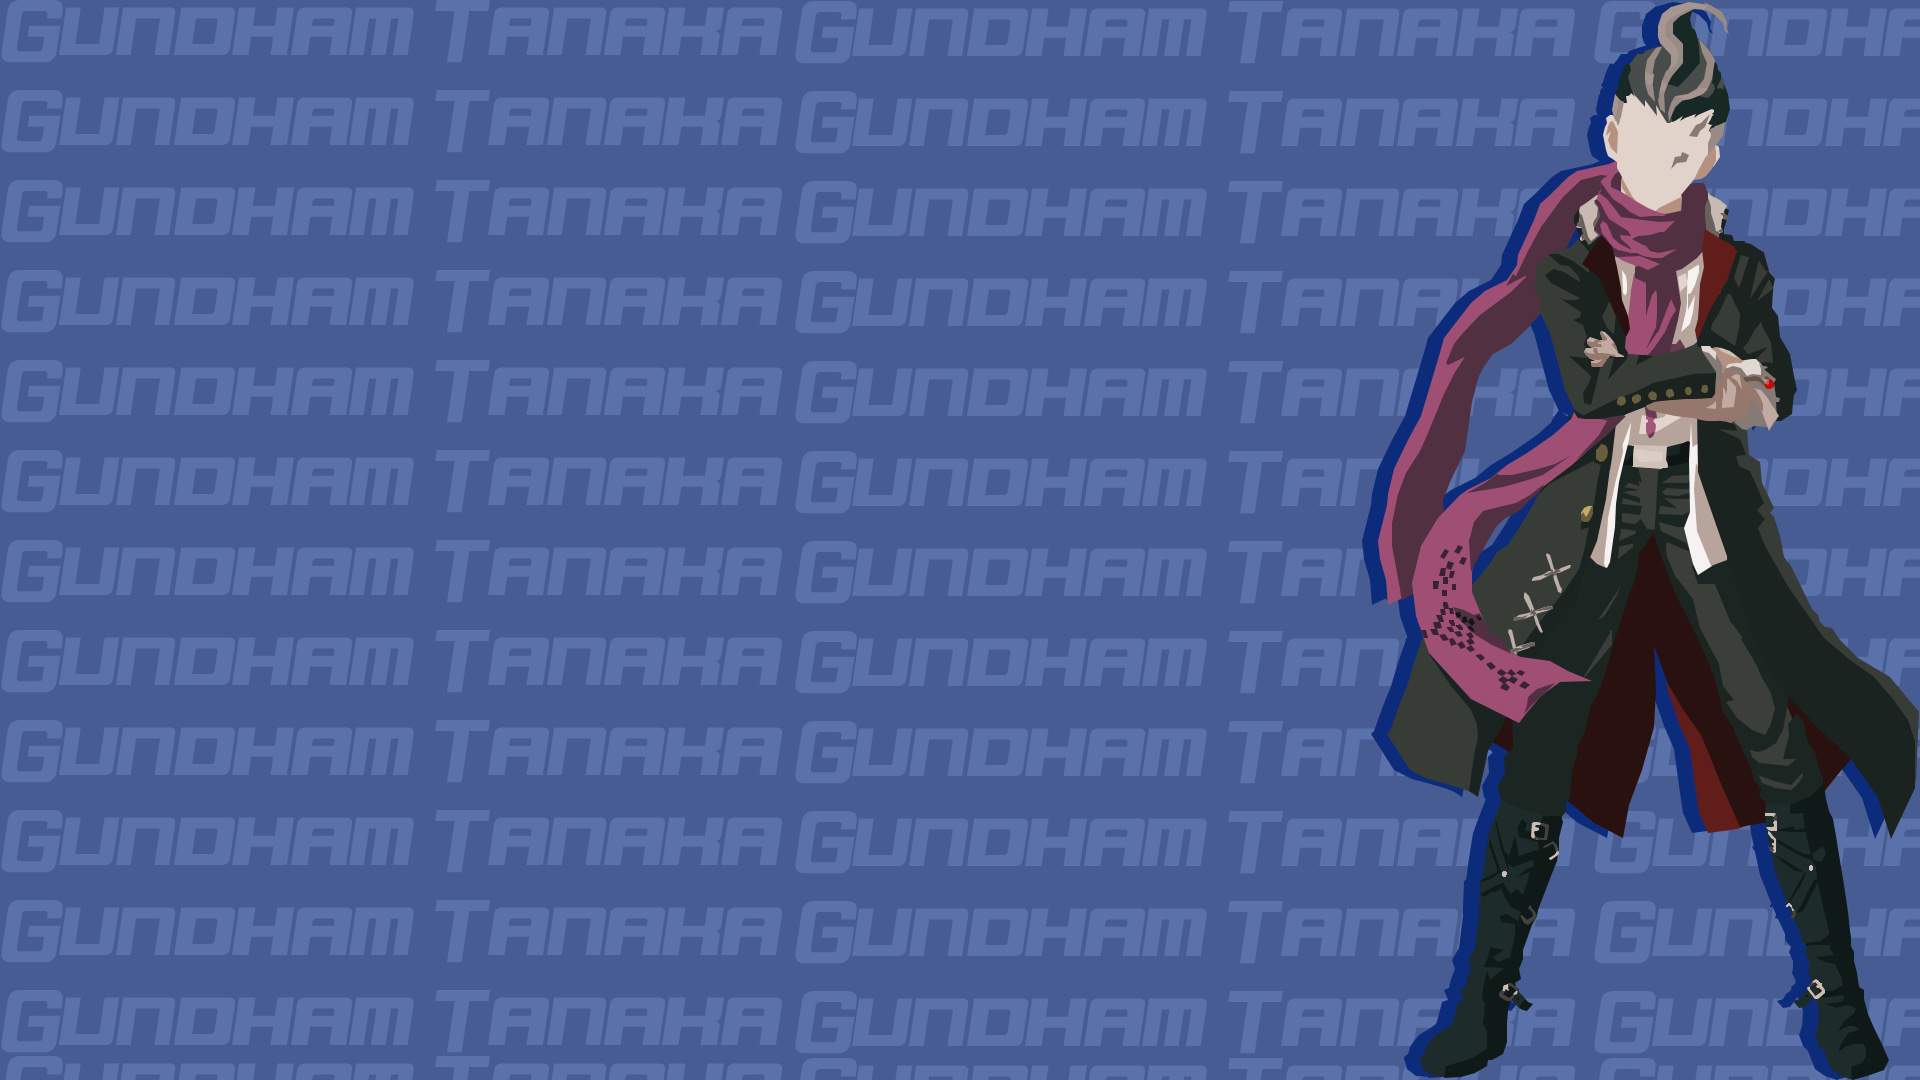 Gundham Tanaka Minimalist Art Background